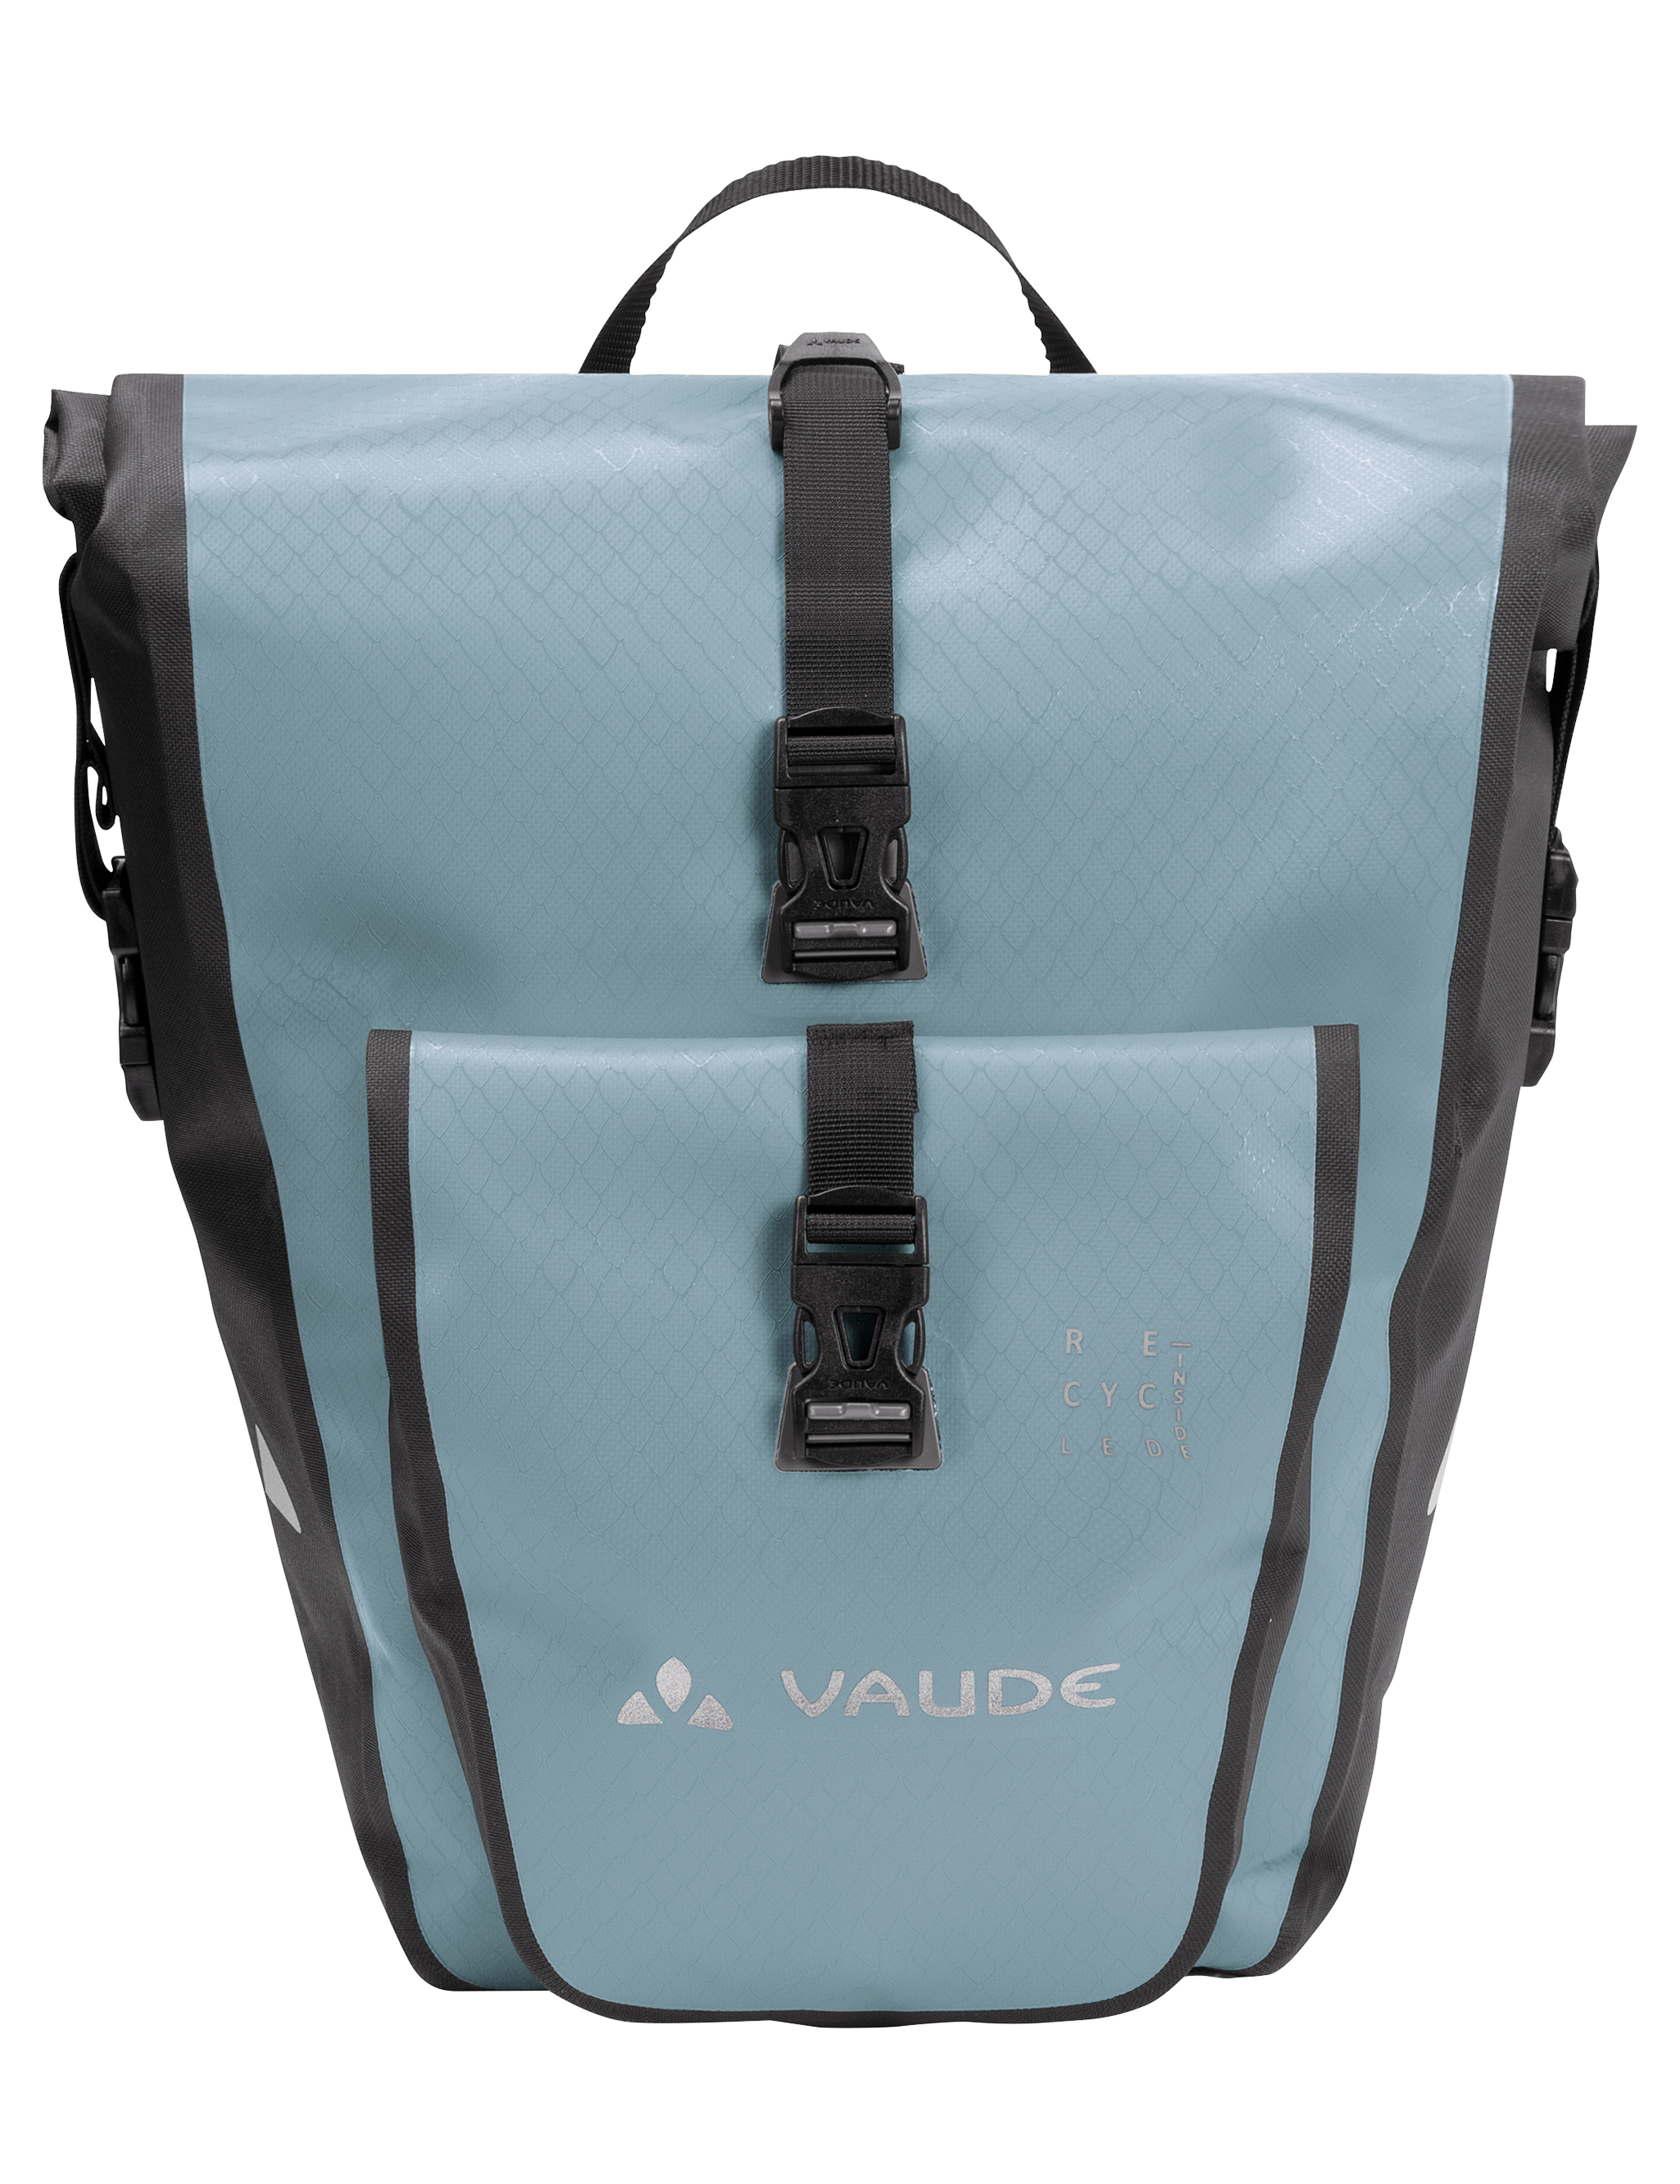 Productfoto van Vaude Aqua Back Plus Single Fietstas (rec) 25.5L - nordic blue